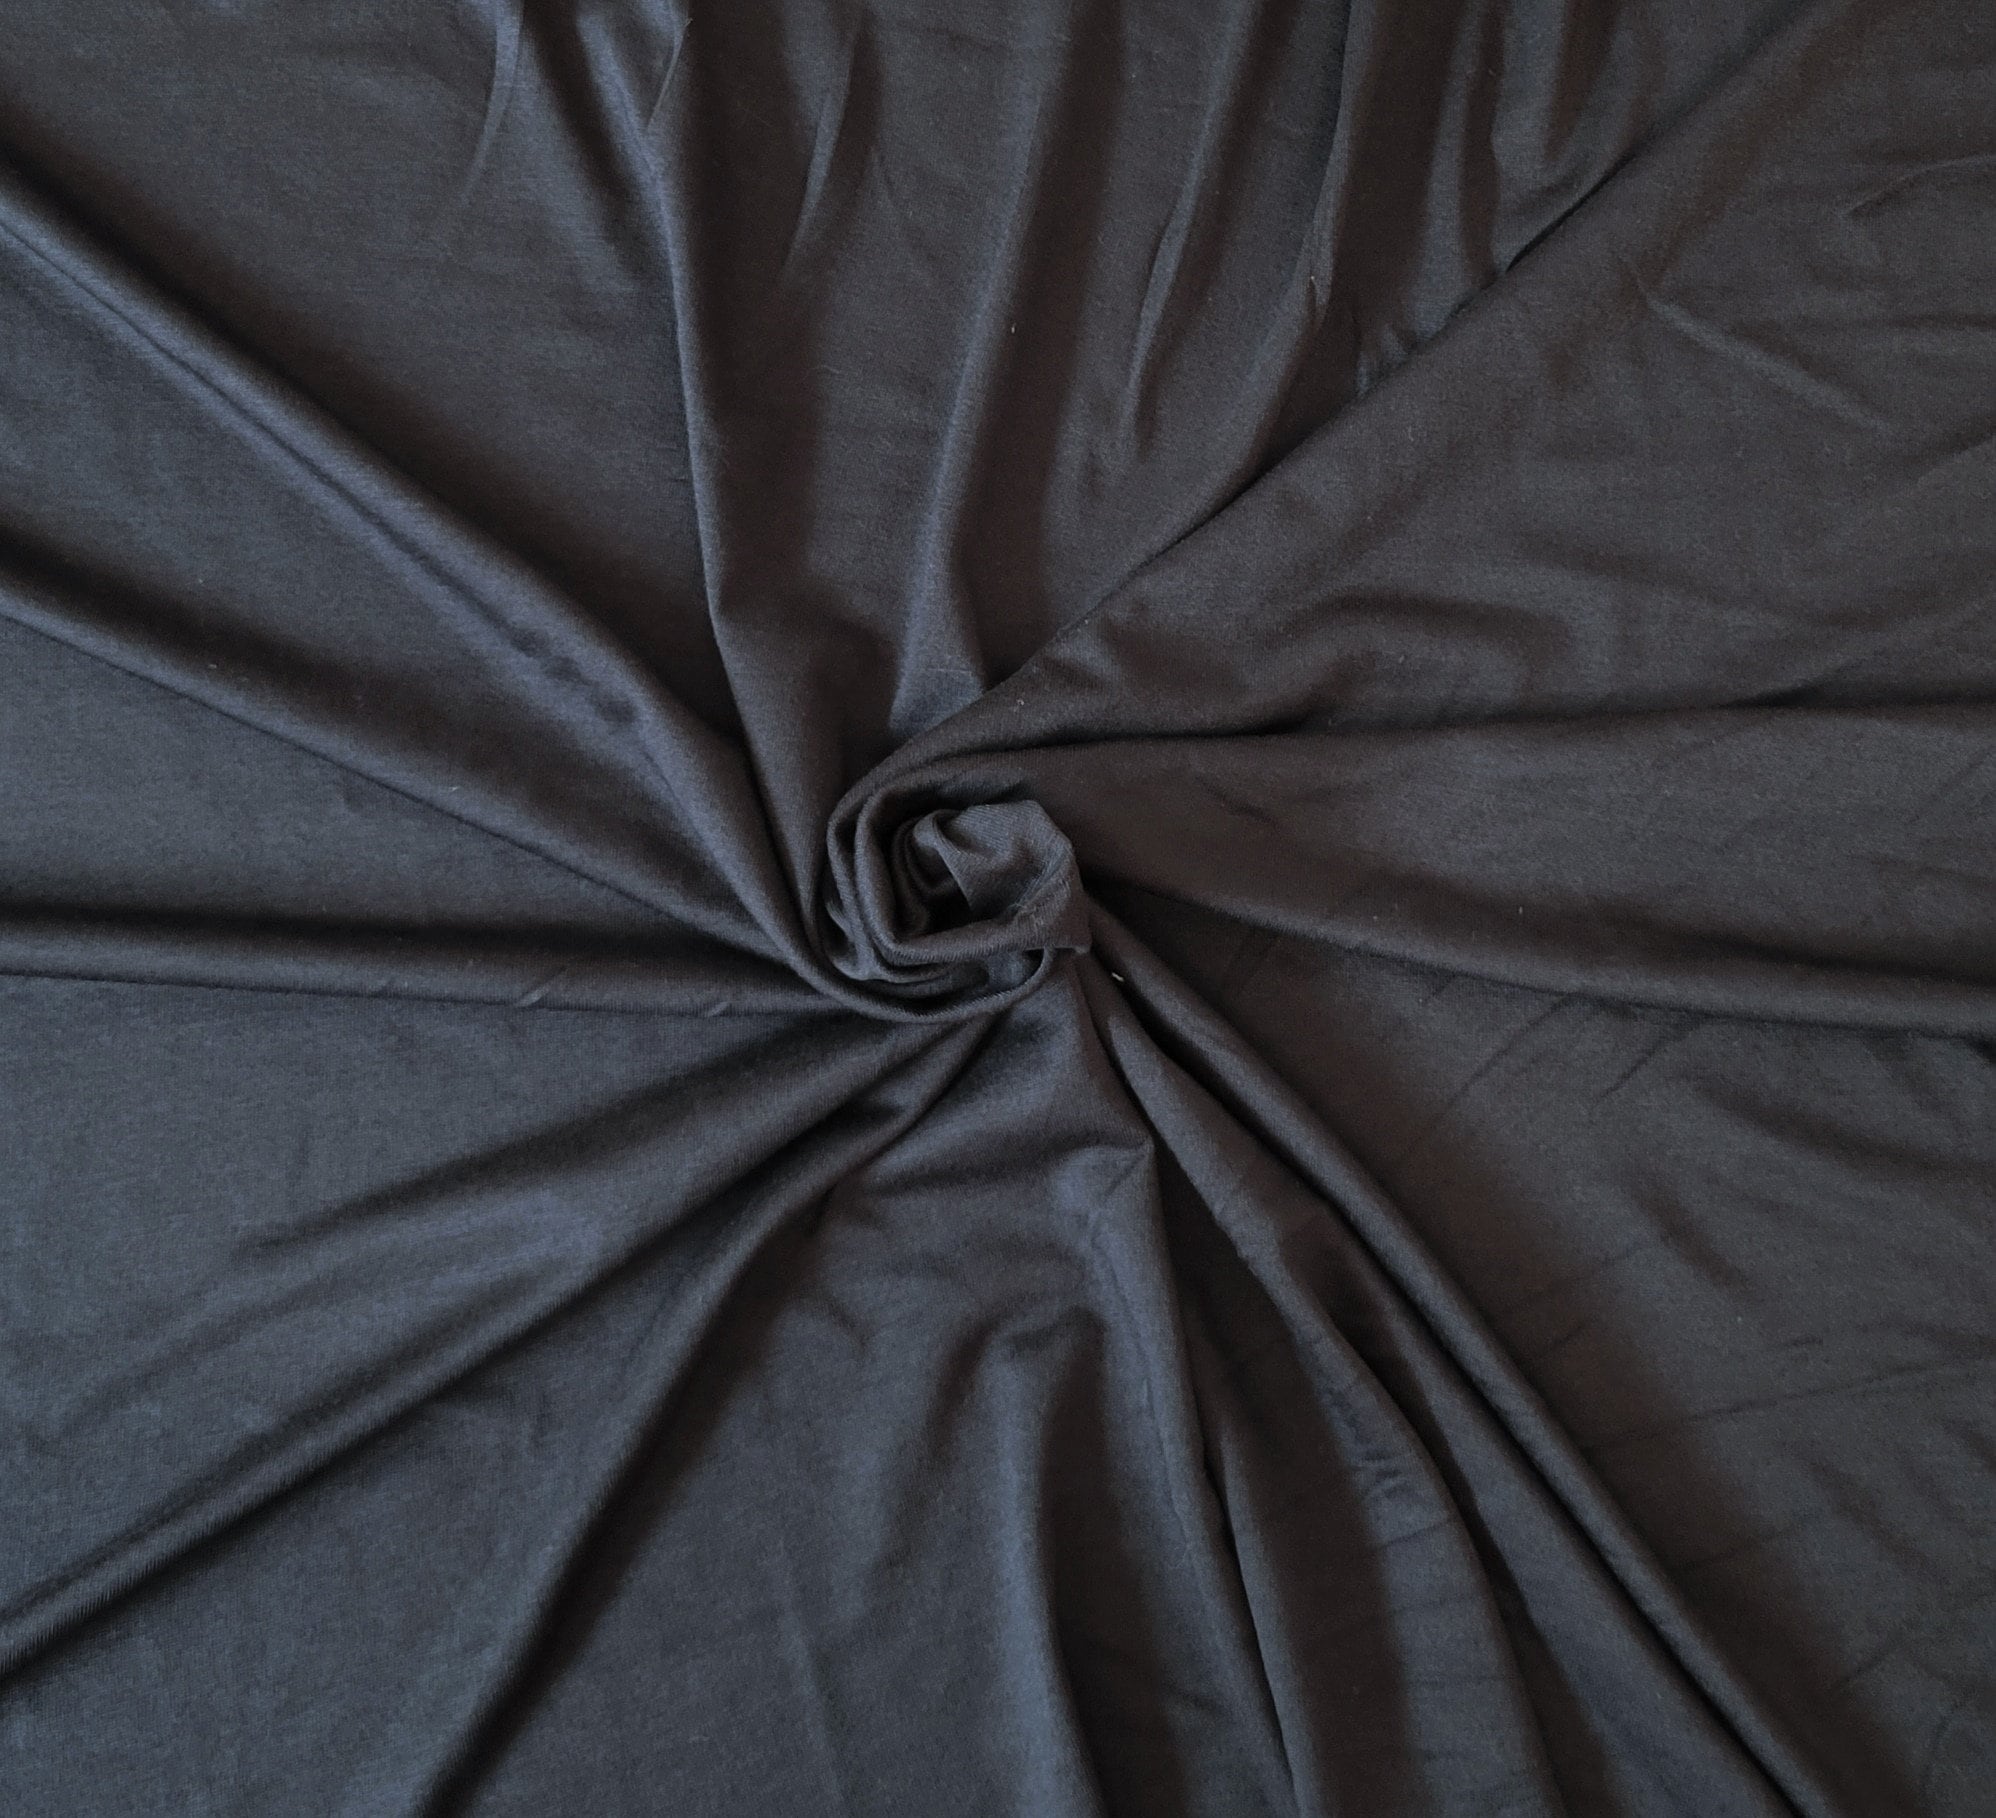 65 Black Modal Spandex Lycra Stretch Jersey Knit Fabric By the Yard